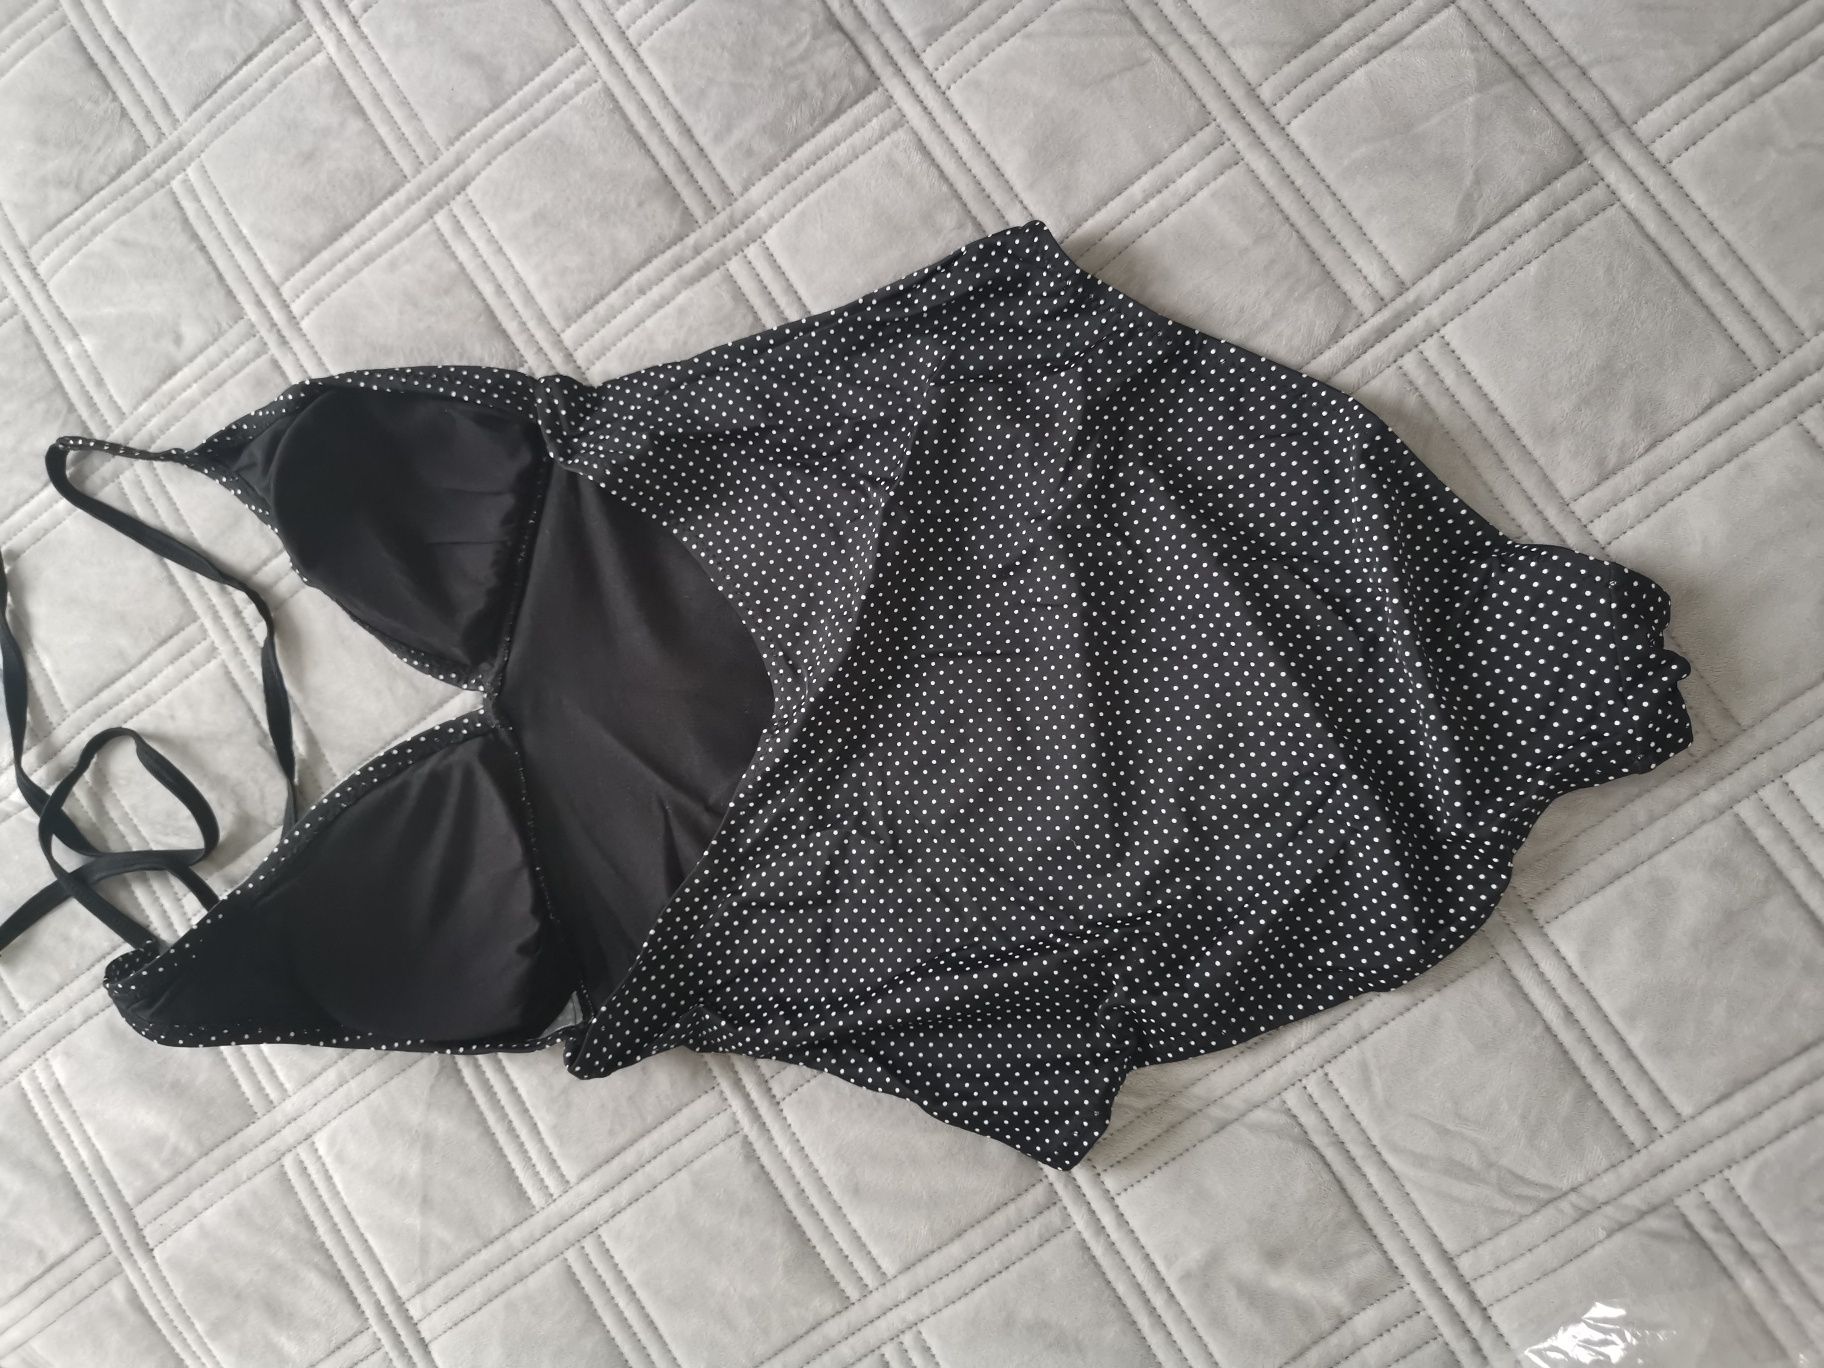 Nowy strój kąpielowy jednoczęściowy czarny w białe groszki rozm. M 38